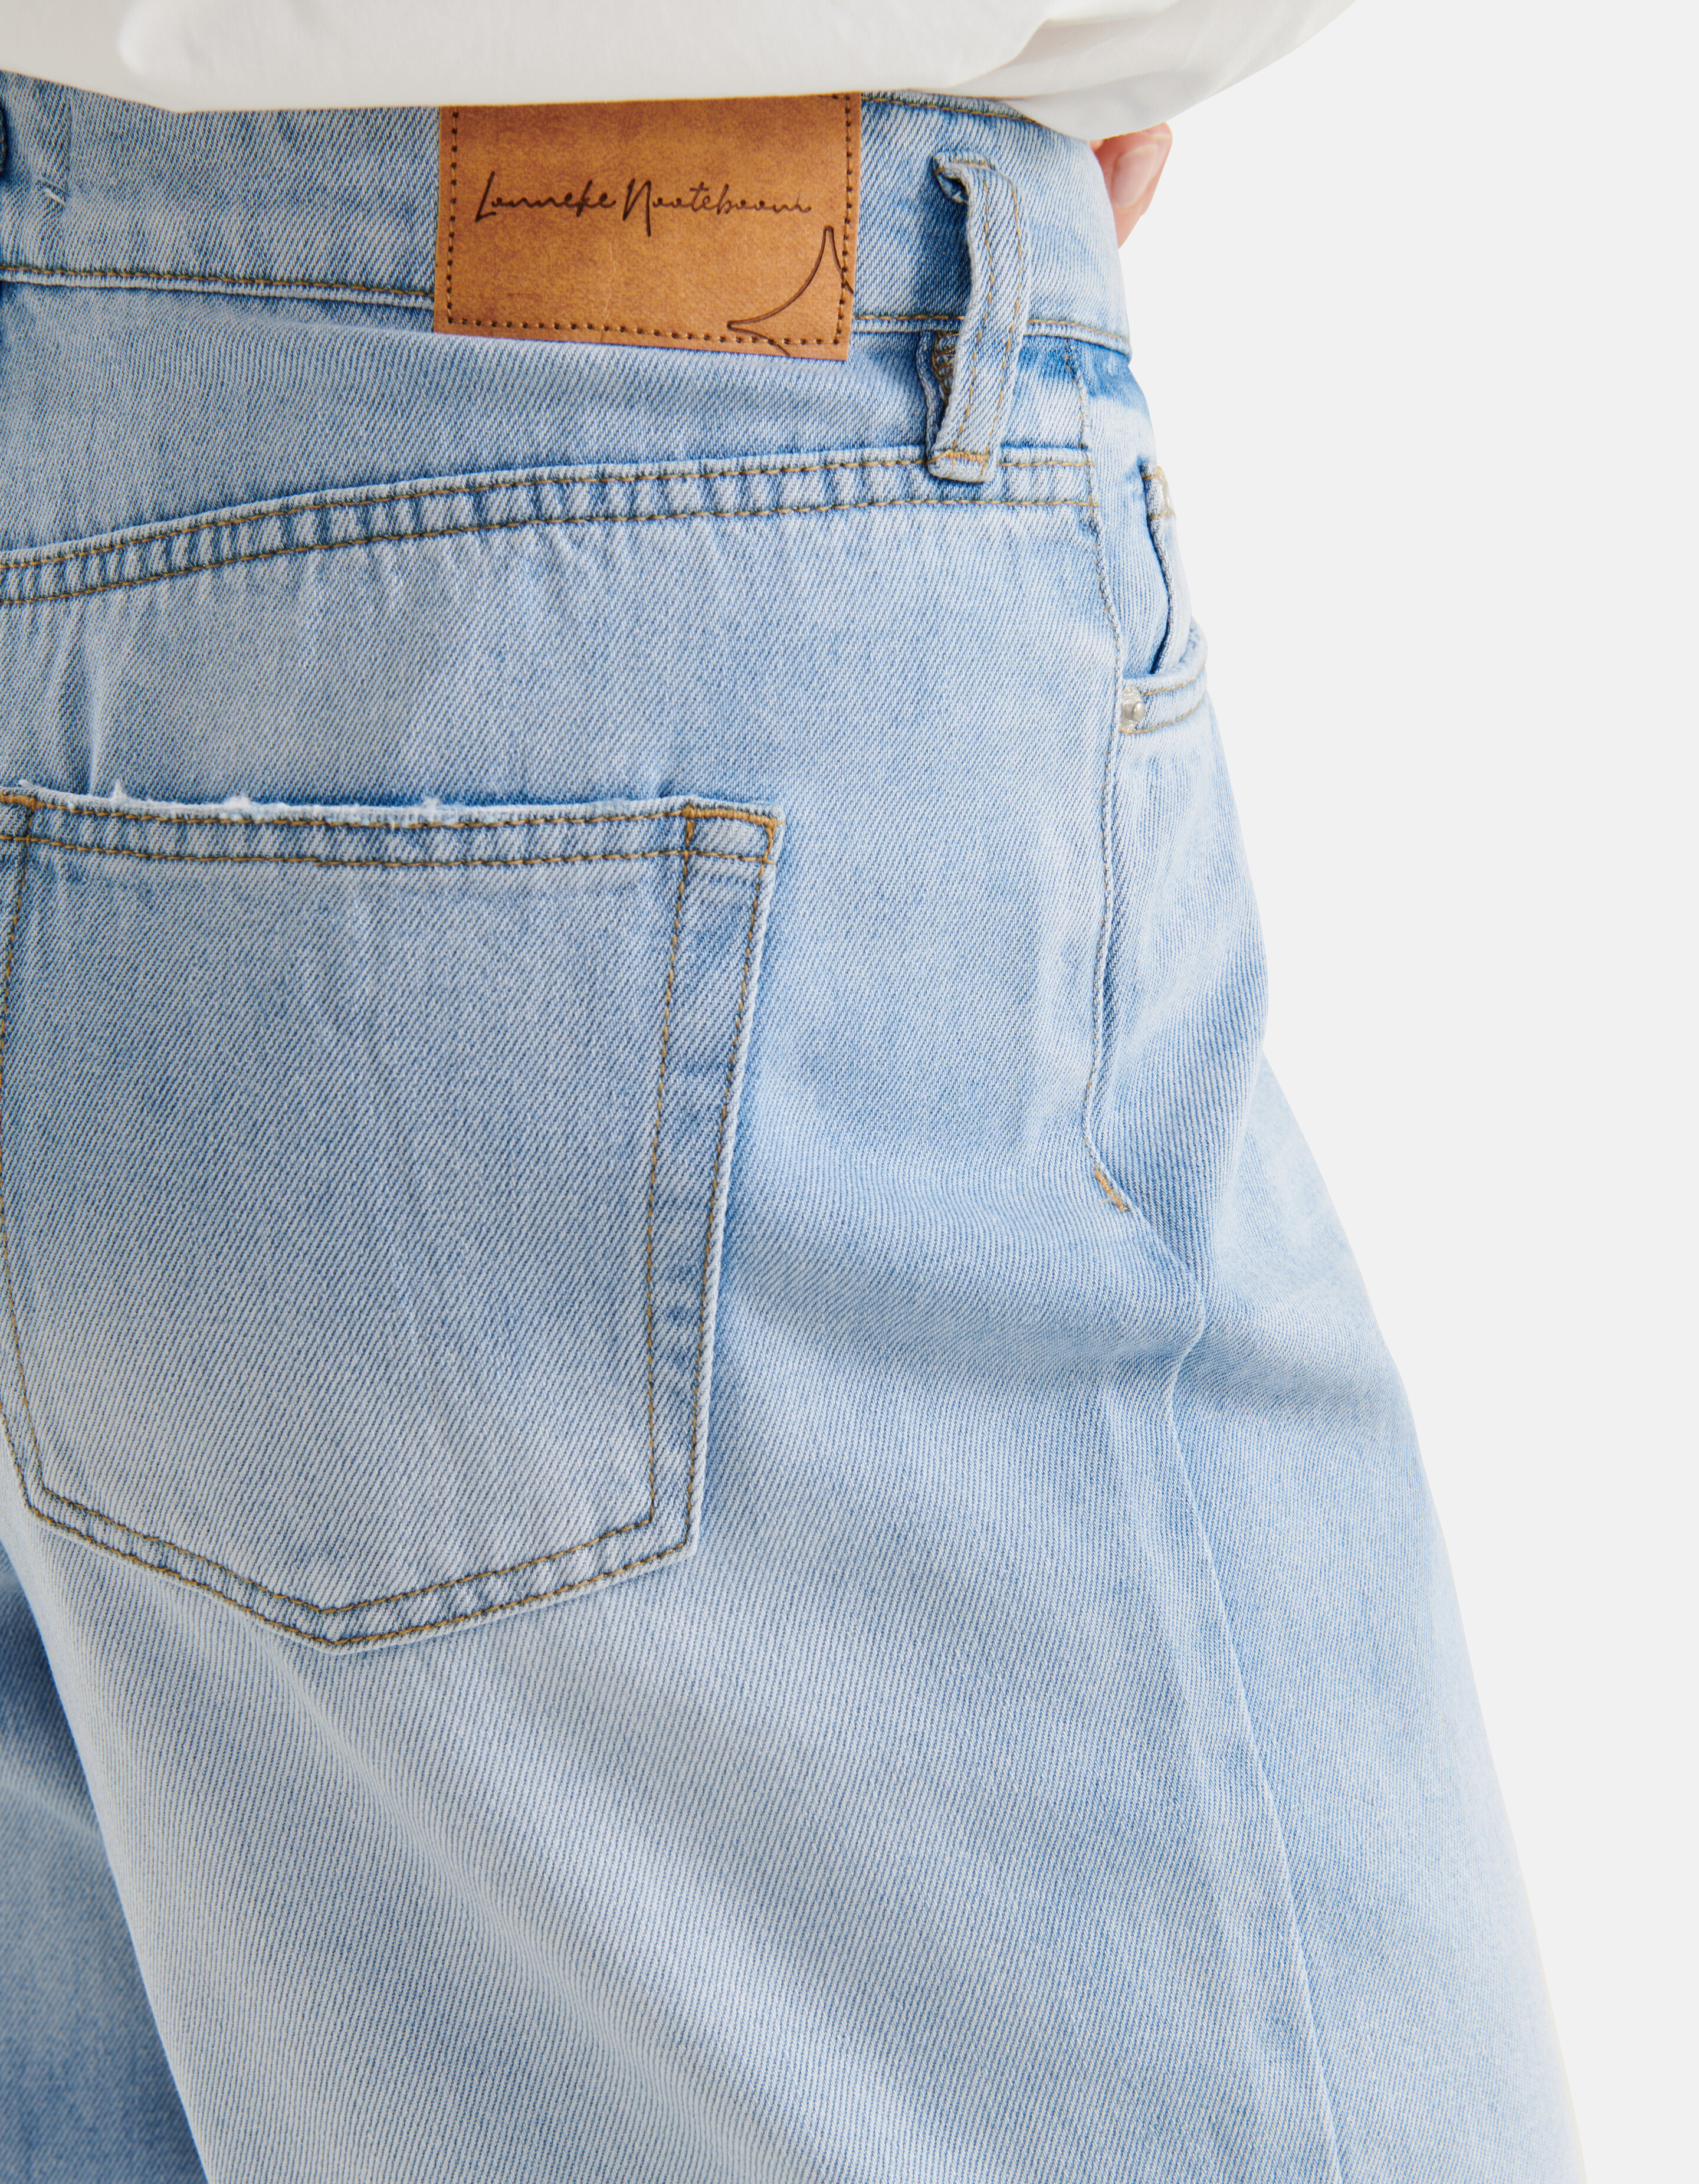 Weit geschnittene Jeans Blau von Lonneke SHOEBY WOMEN